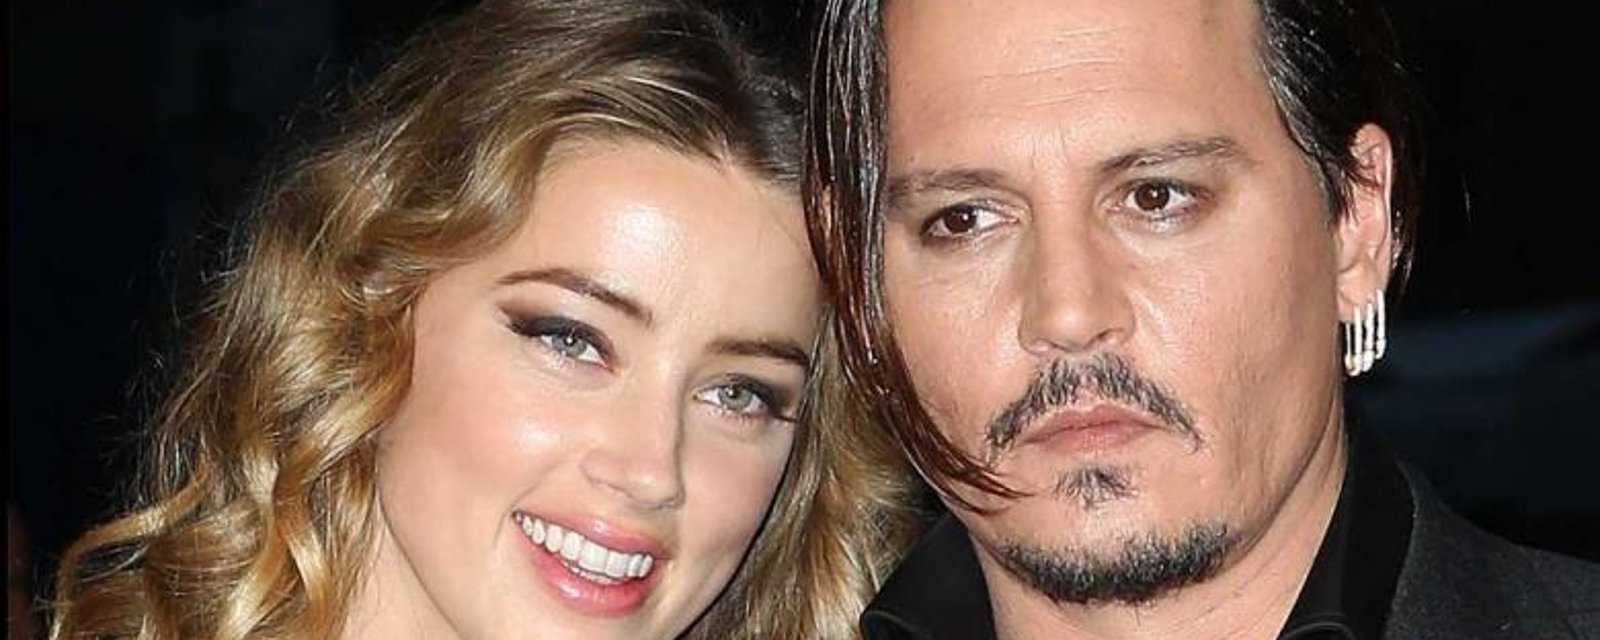 Le troublant passé de l'ex-femme de Johnny Depp refait surface!